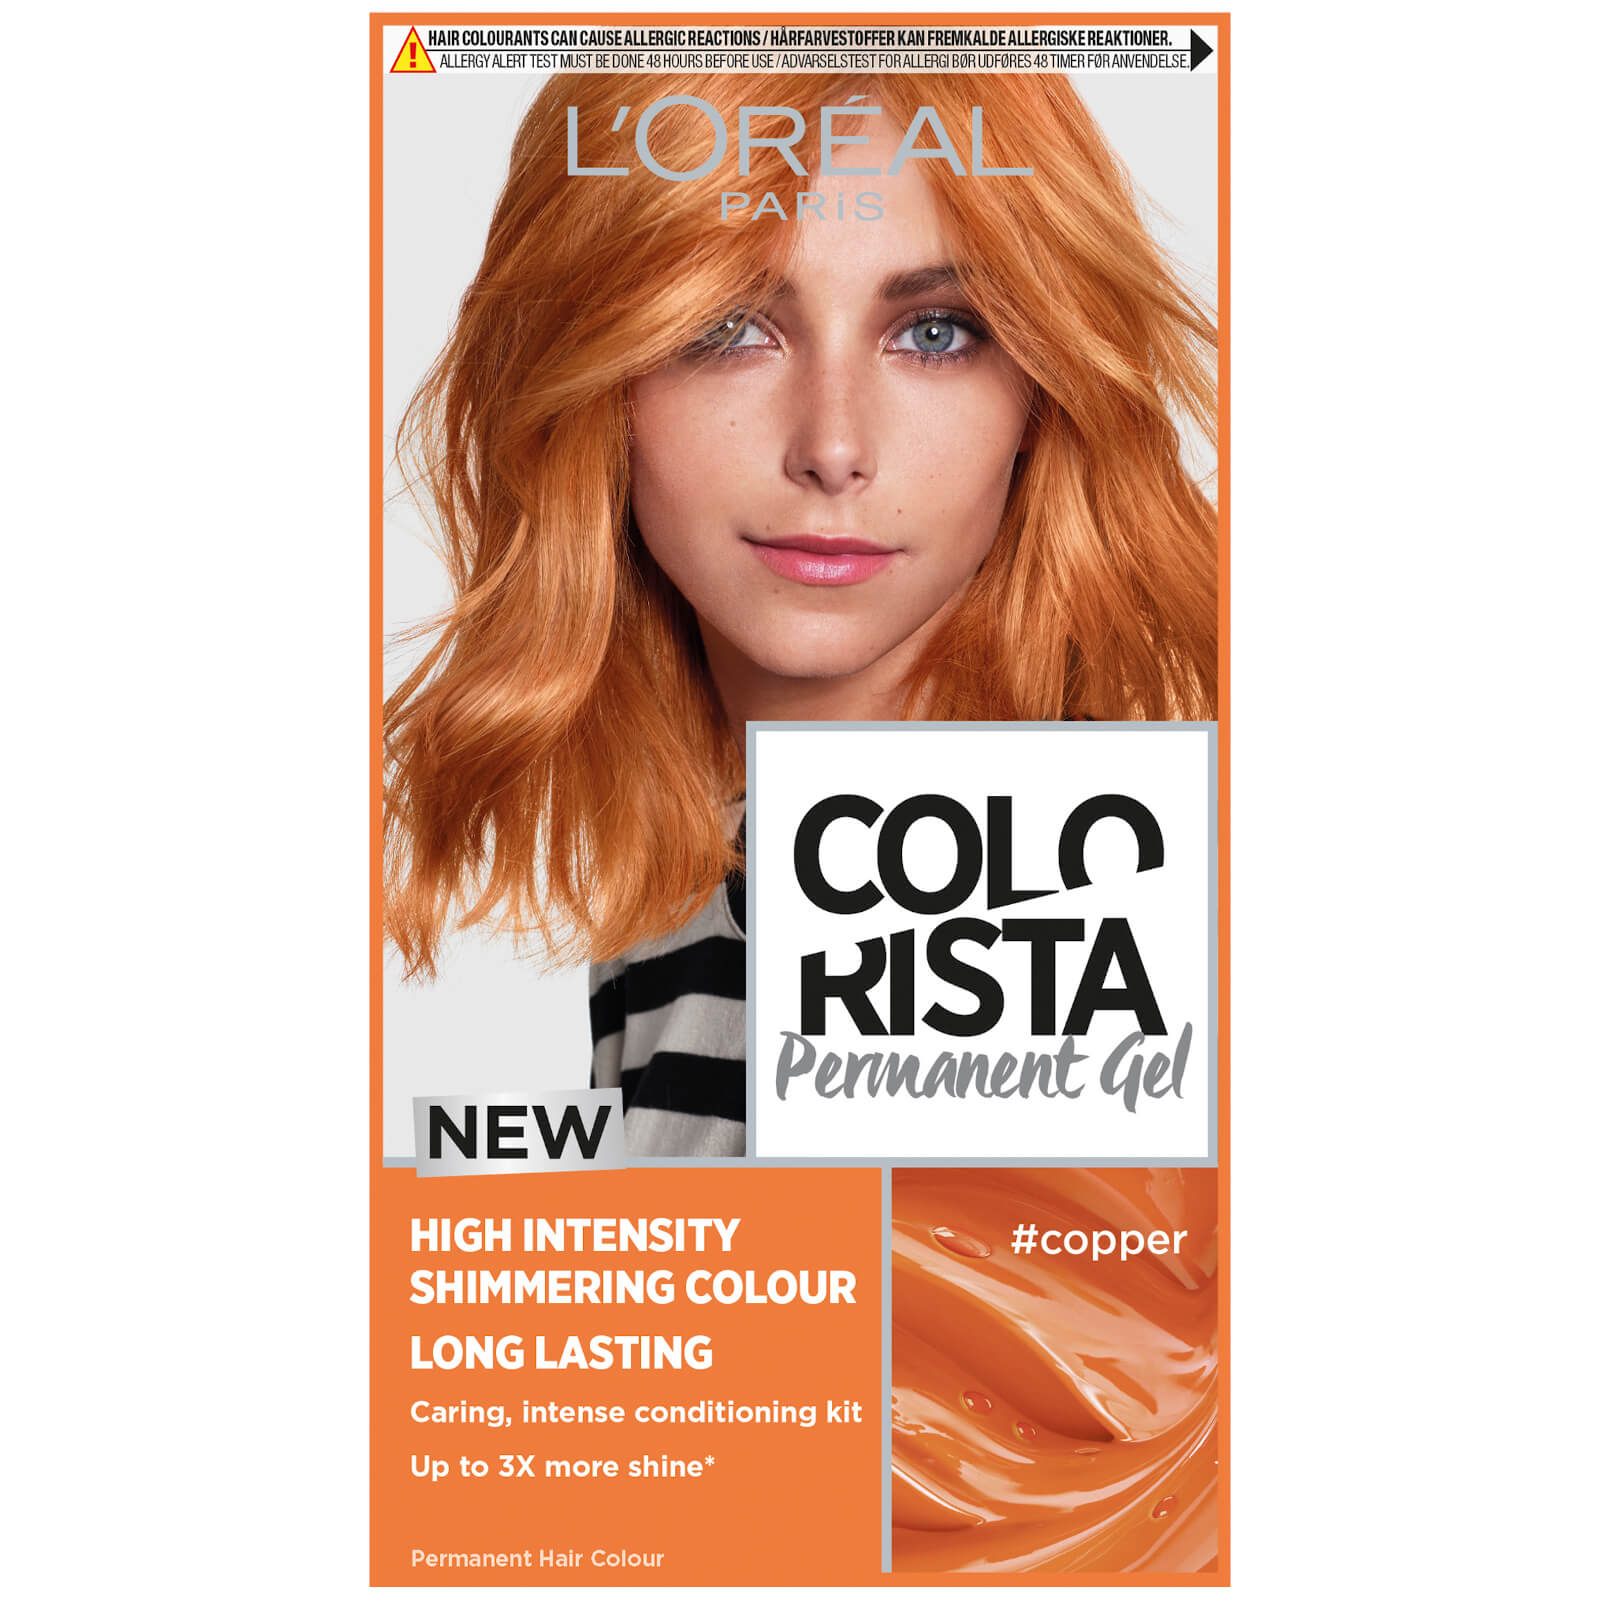 L'Oréal Paris Colorista Permanent Gel Hair Dye (Various Shades) - Copper